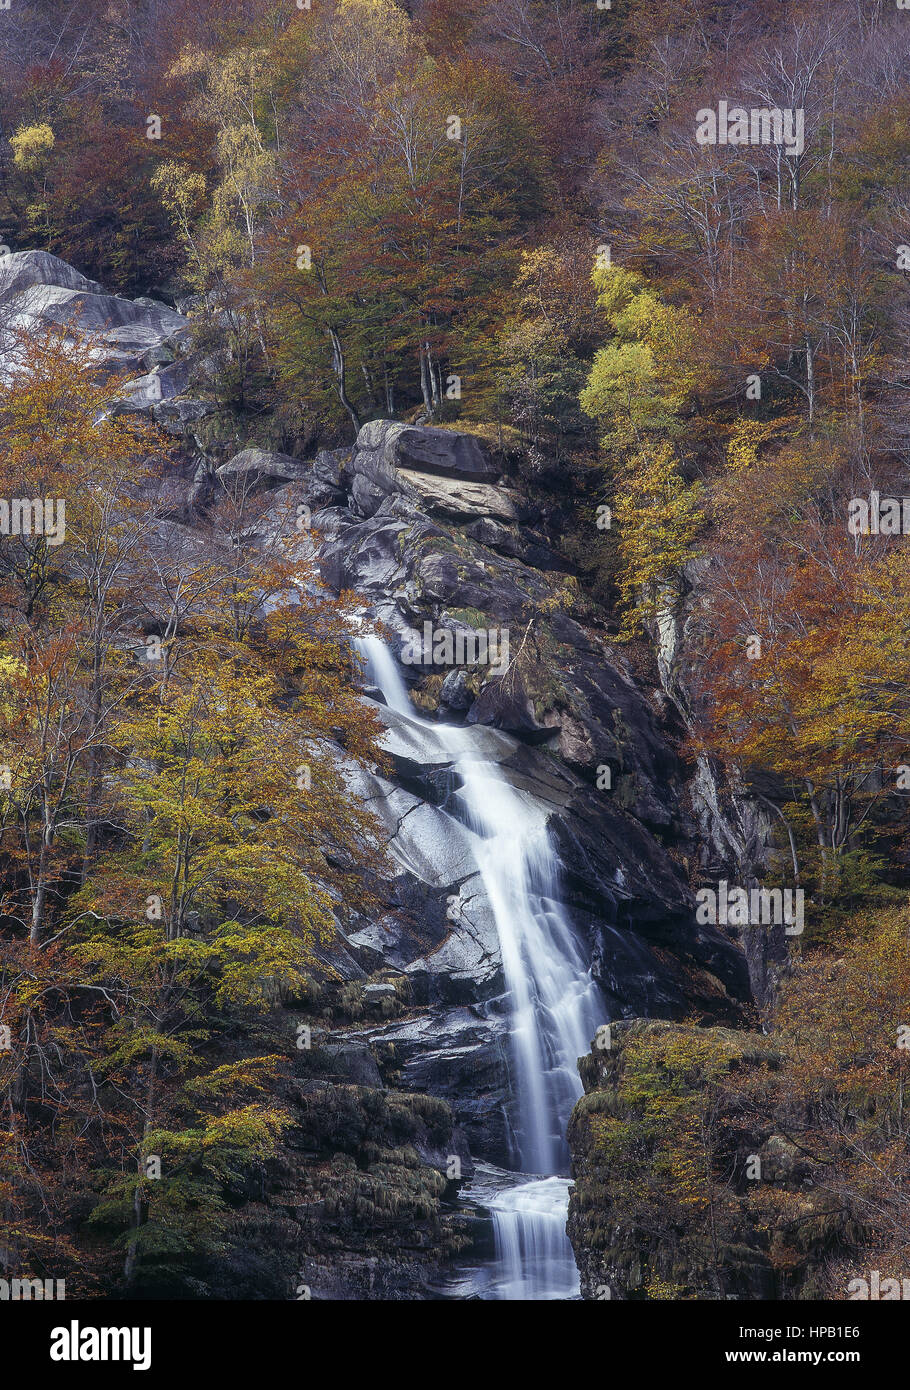 Wasserfall in herbstlichem laubwald, Tessin, Schweiz Foto Stock